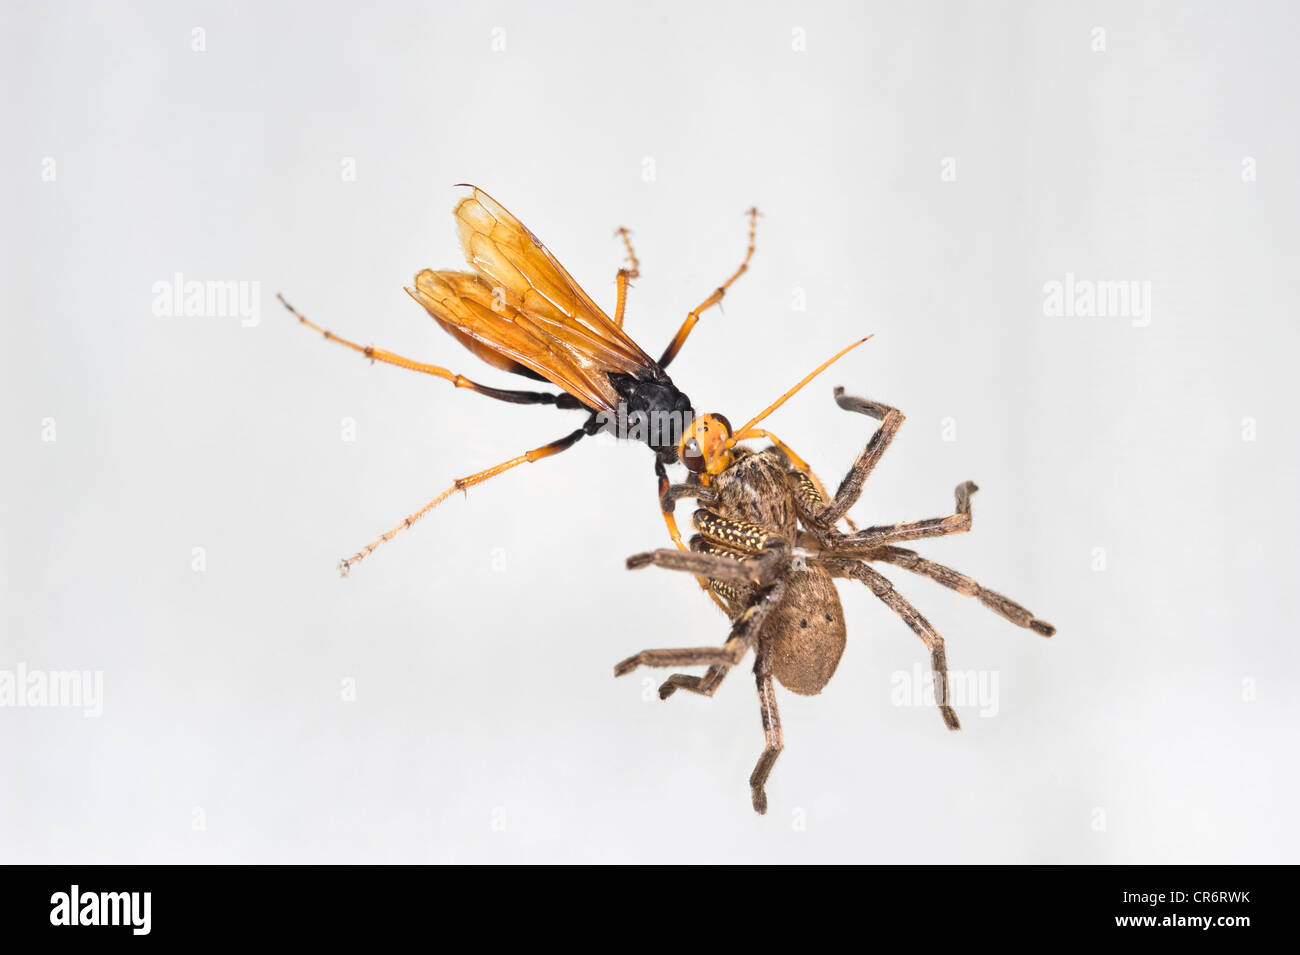 Spider hunter wasp dragging huntsman spider backwards up glass Stock Photo